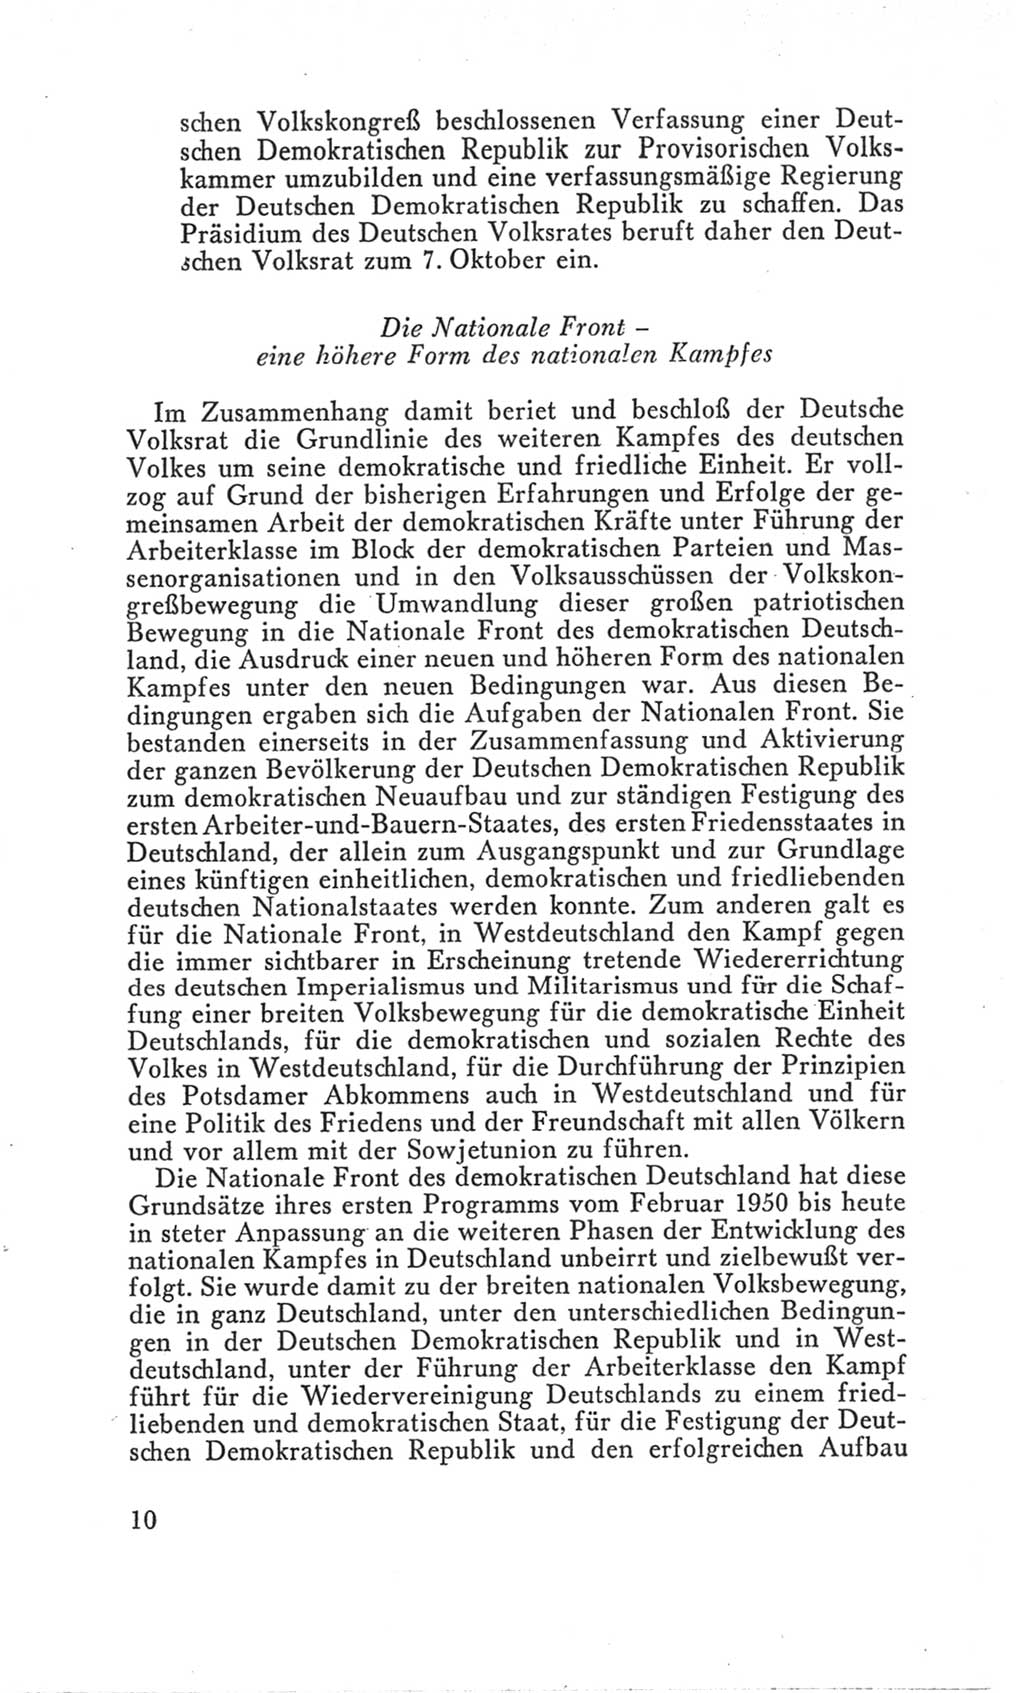 Handbuch der Volkskammer (VK) der Deutschen Demokratischen Republik (DDR), 3. Wahlperiode 1958-1963, Seite 10 (Hdb. VK. DDR 3. WP. 1958-1963, S. 10)